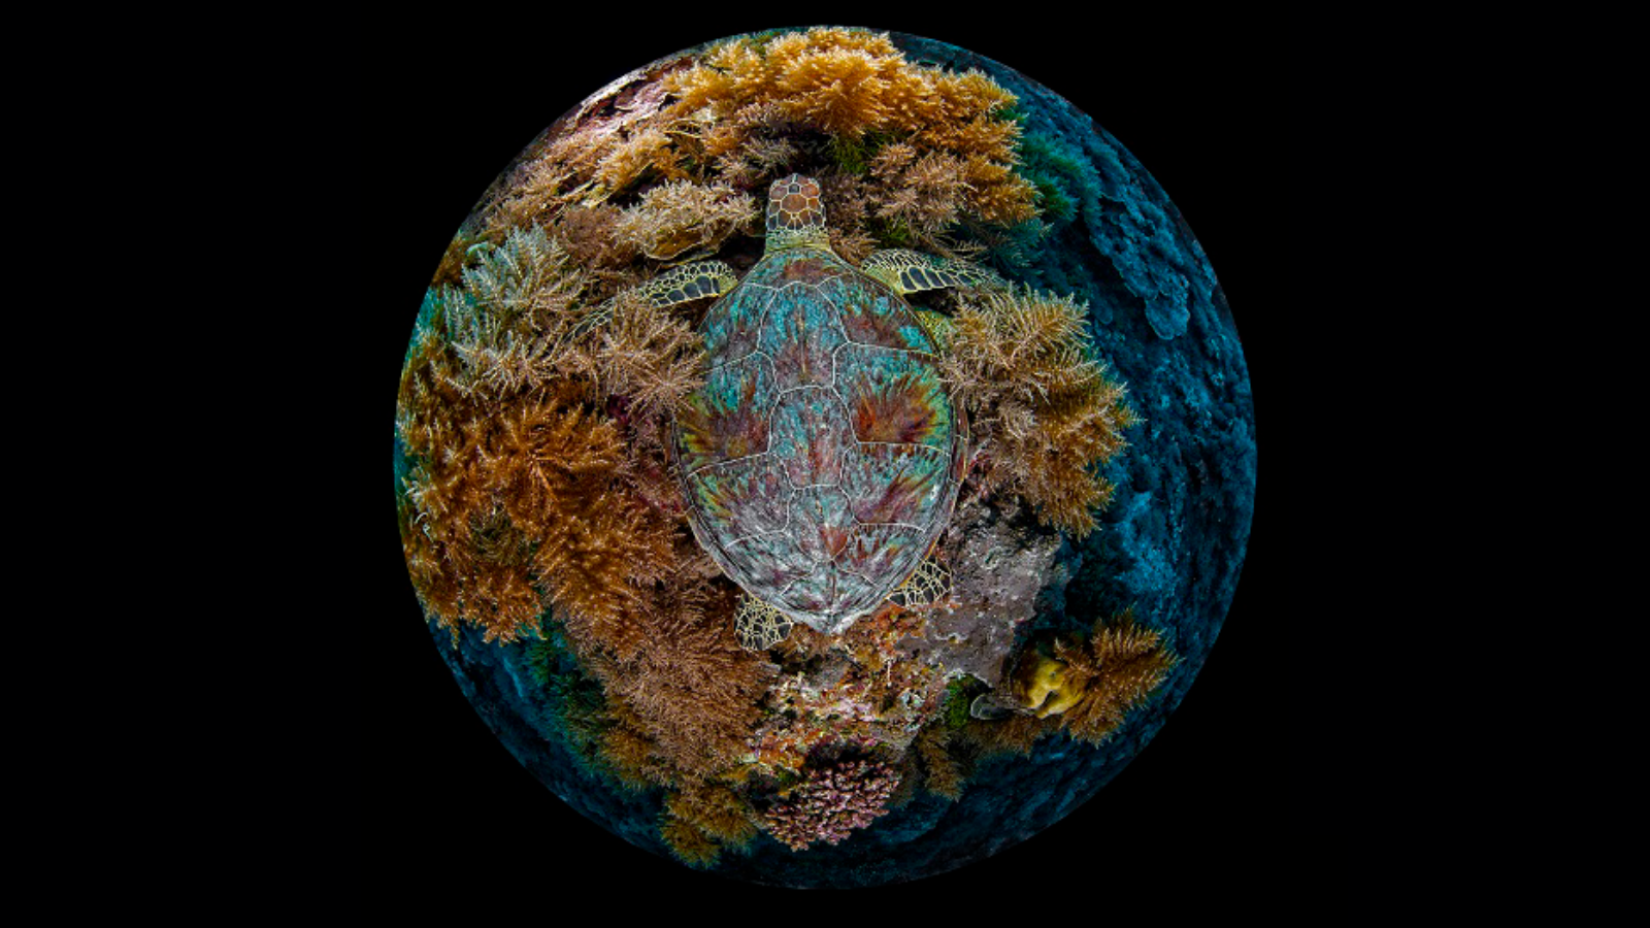 Tartaruga verde em recife de coral. Créditos: Volger/Concurso de Fotos da ONU para o Dia Mundial dos Oceanos. 